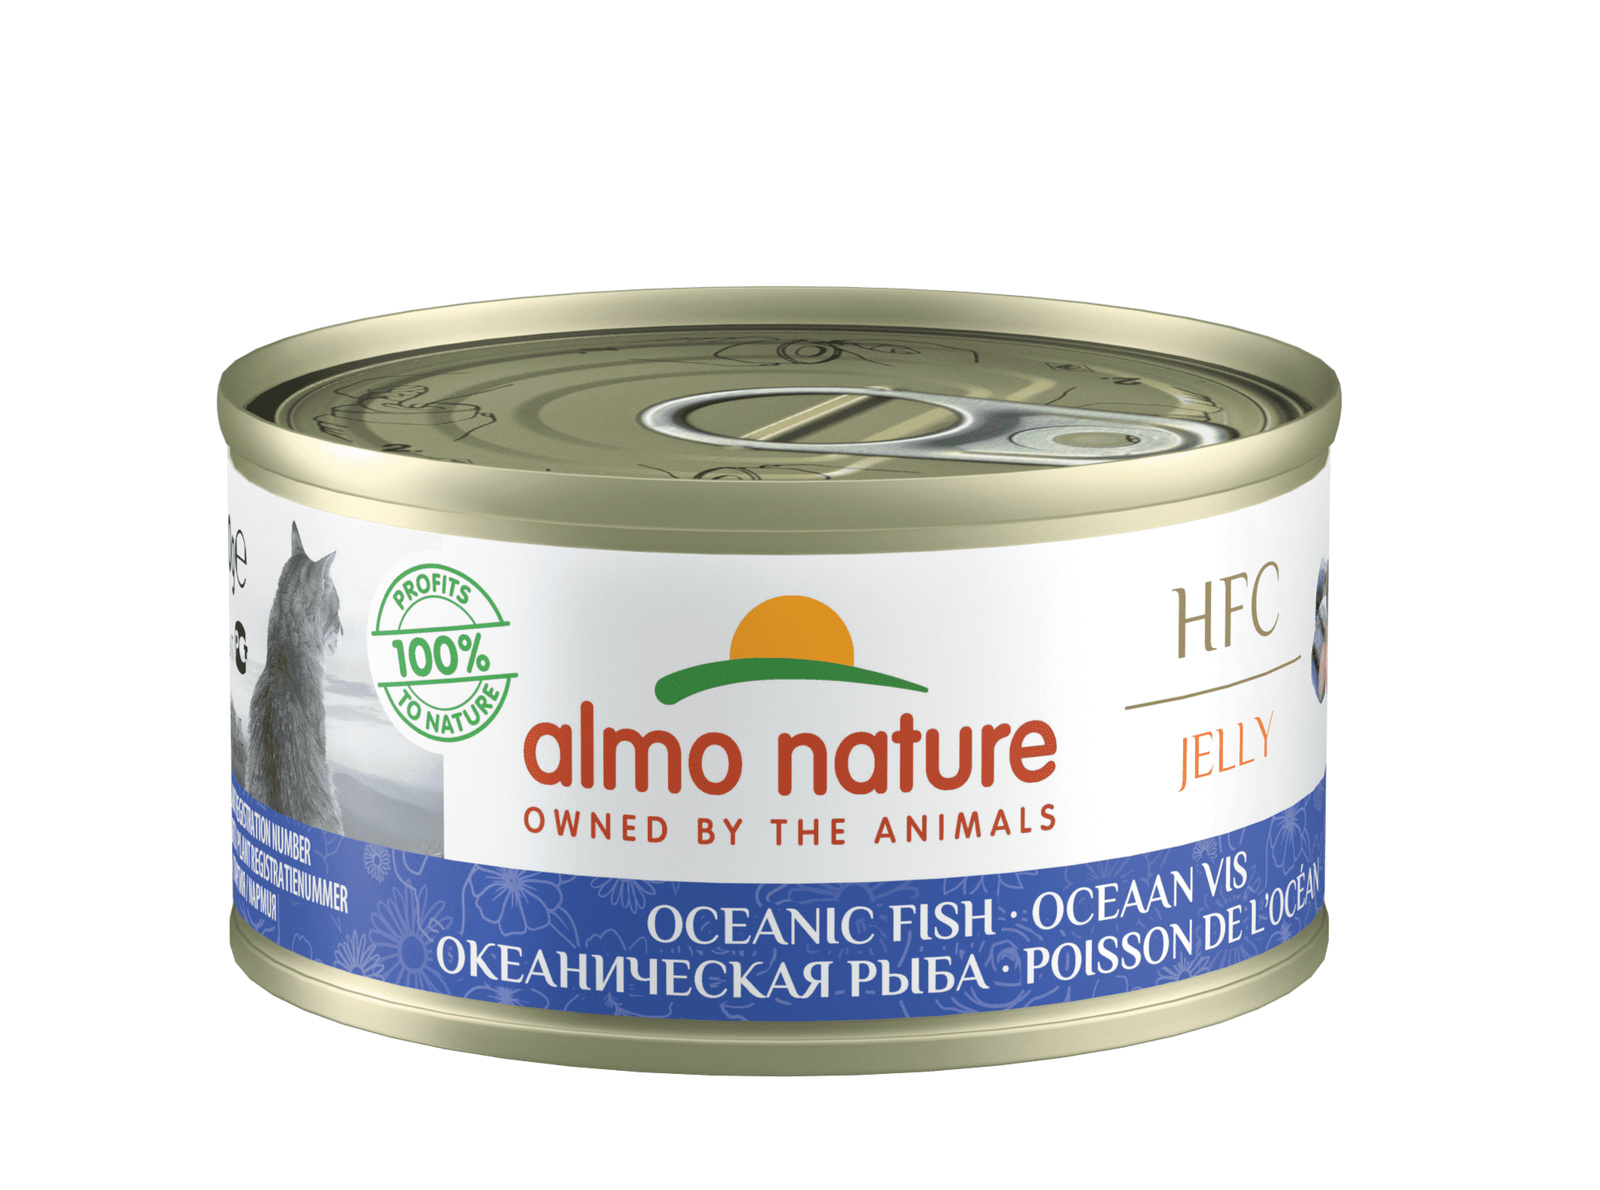 Almo Nature консервы Almo Nature консервы с океанической рыбой в желе для кошек (70 г) almo nature консервы almo nature консервы с морепродуктами в желе для кошек 70 г